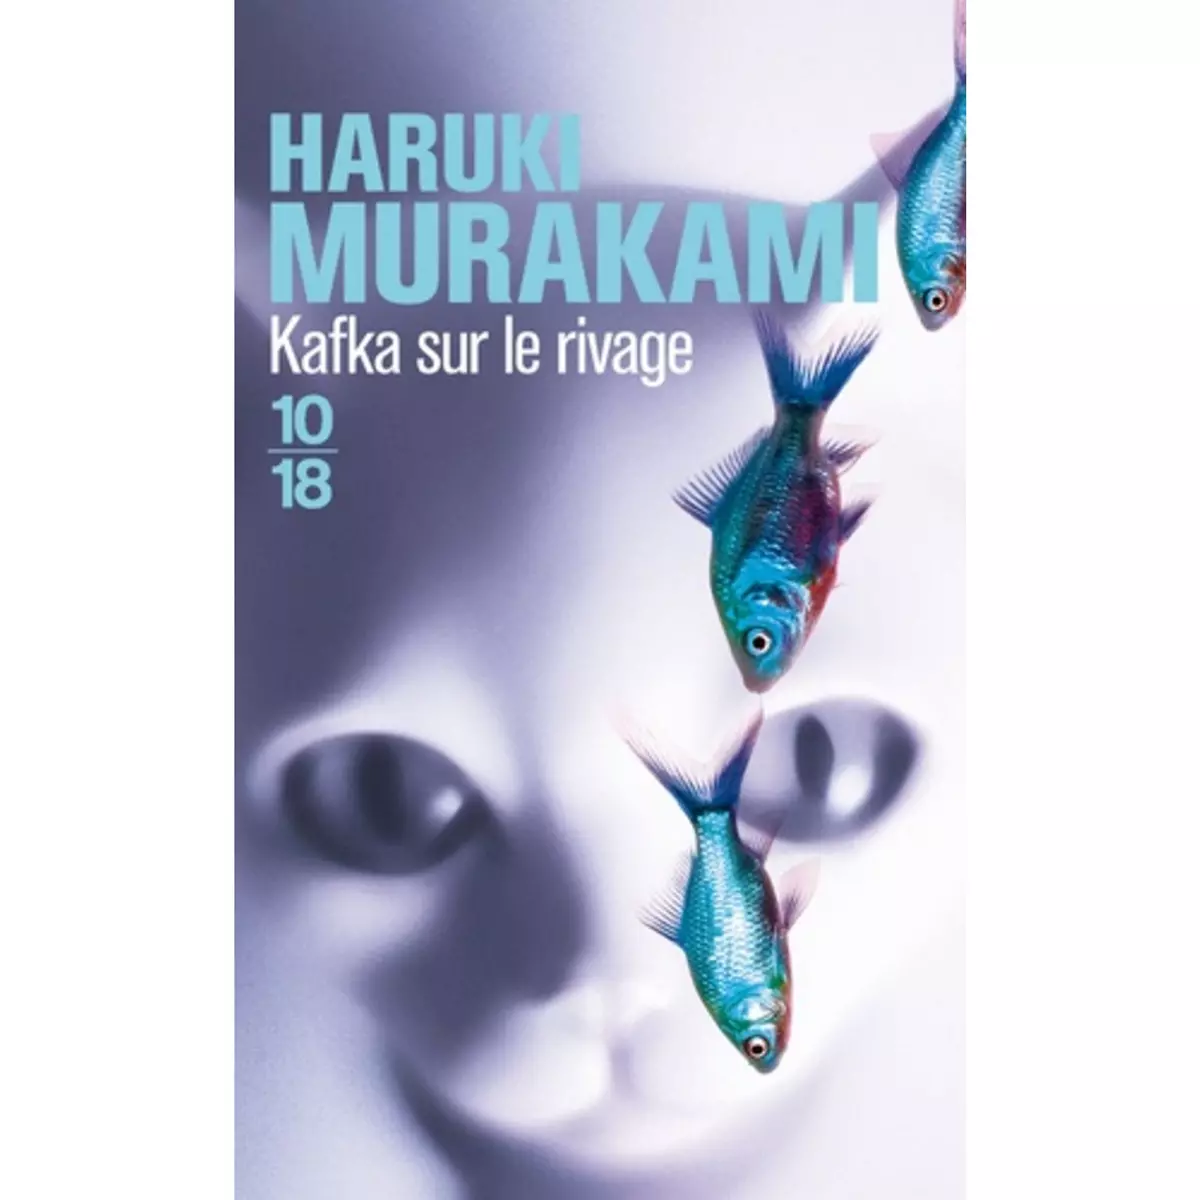  KAFKA SUR LE RIVAGE, Murakami Haruki